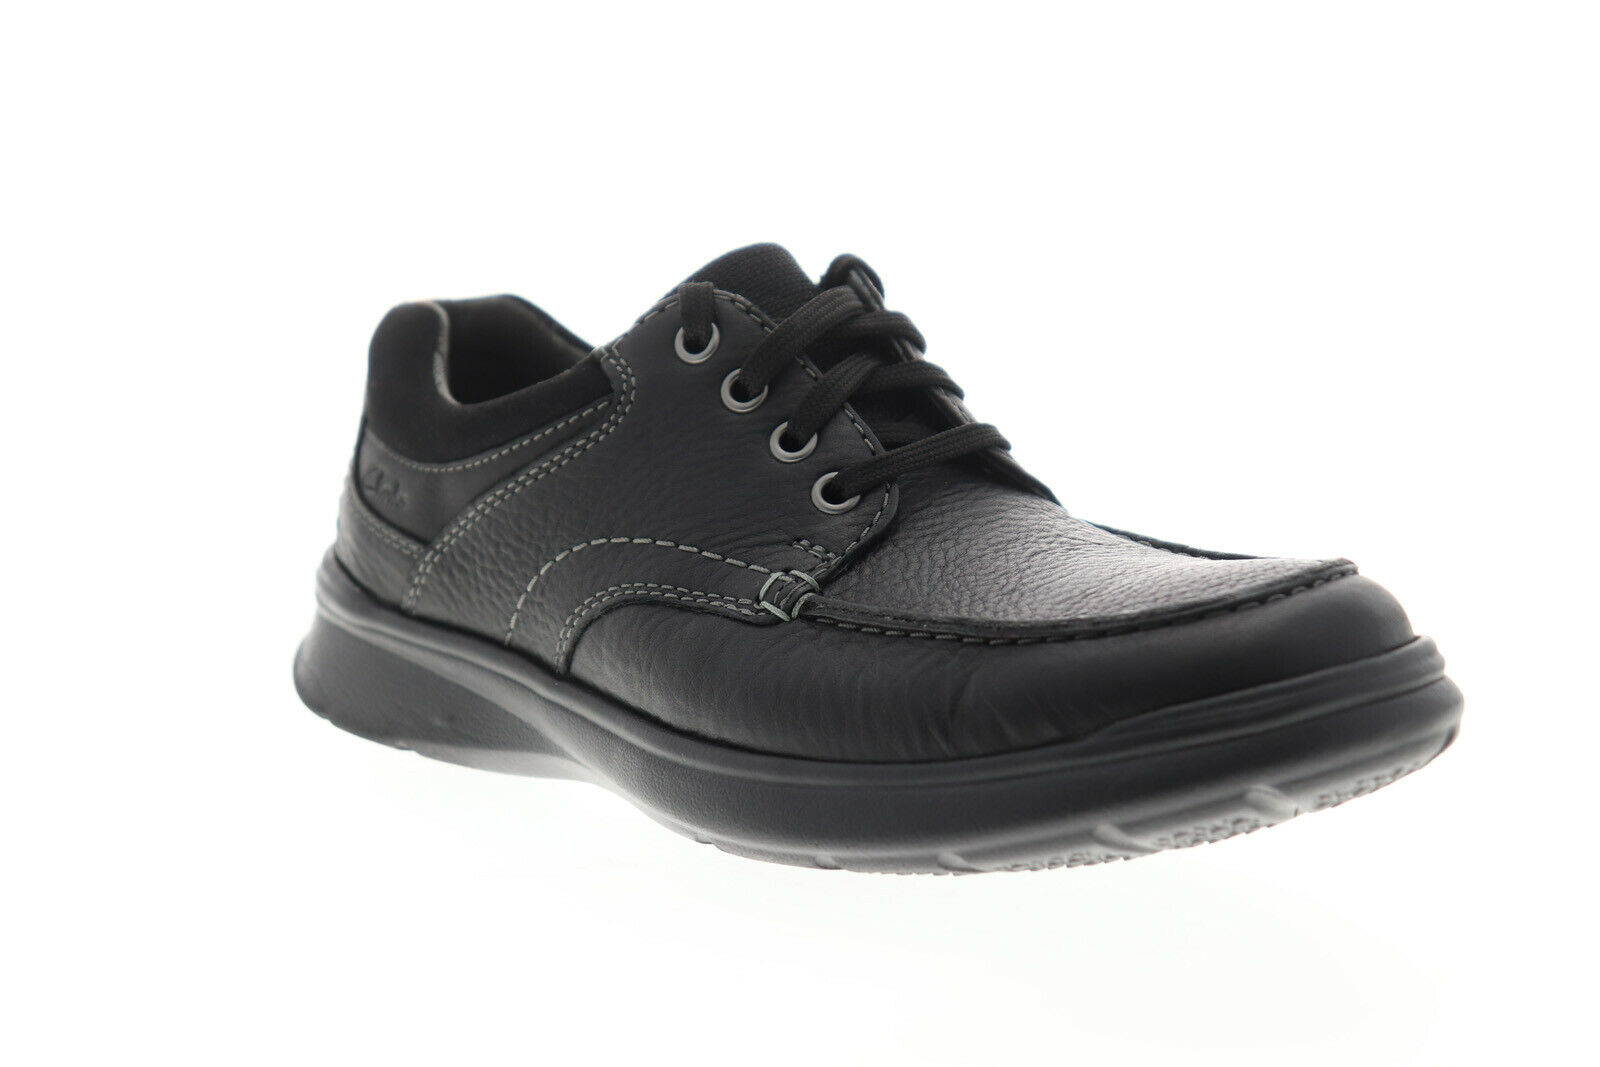 Clarks Cotrell Edge 26120211 Mens Black Oxfords & Lace Ups Plain Toe Shoes 9.5